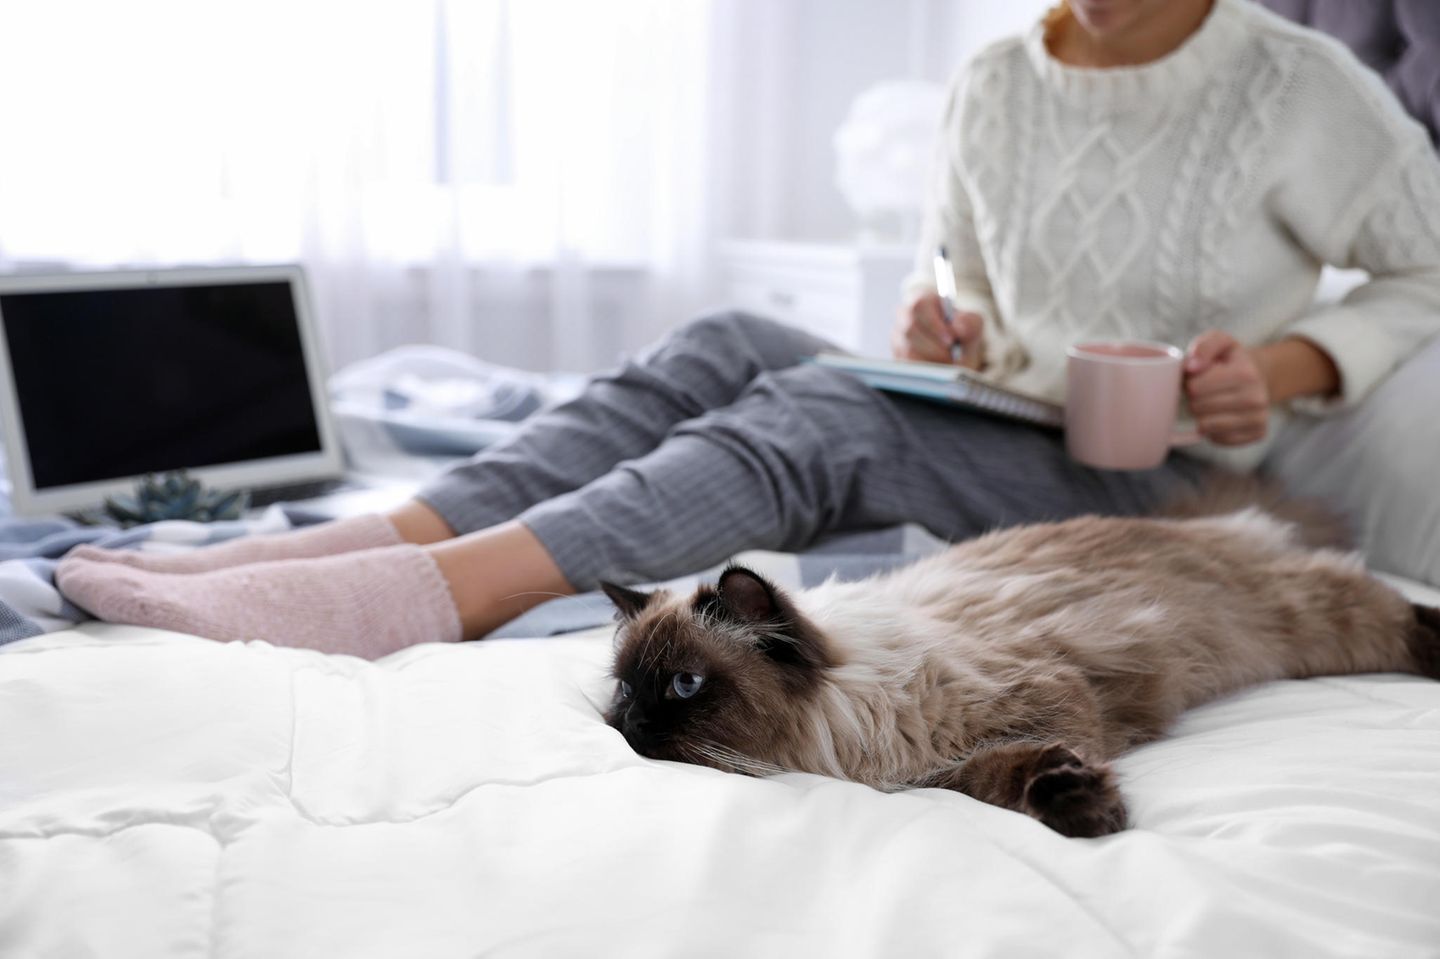 Was tun bei Quarantäne? Eine Frau sitzt mit ihrer Katze auf dem Bett